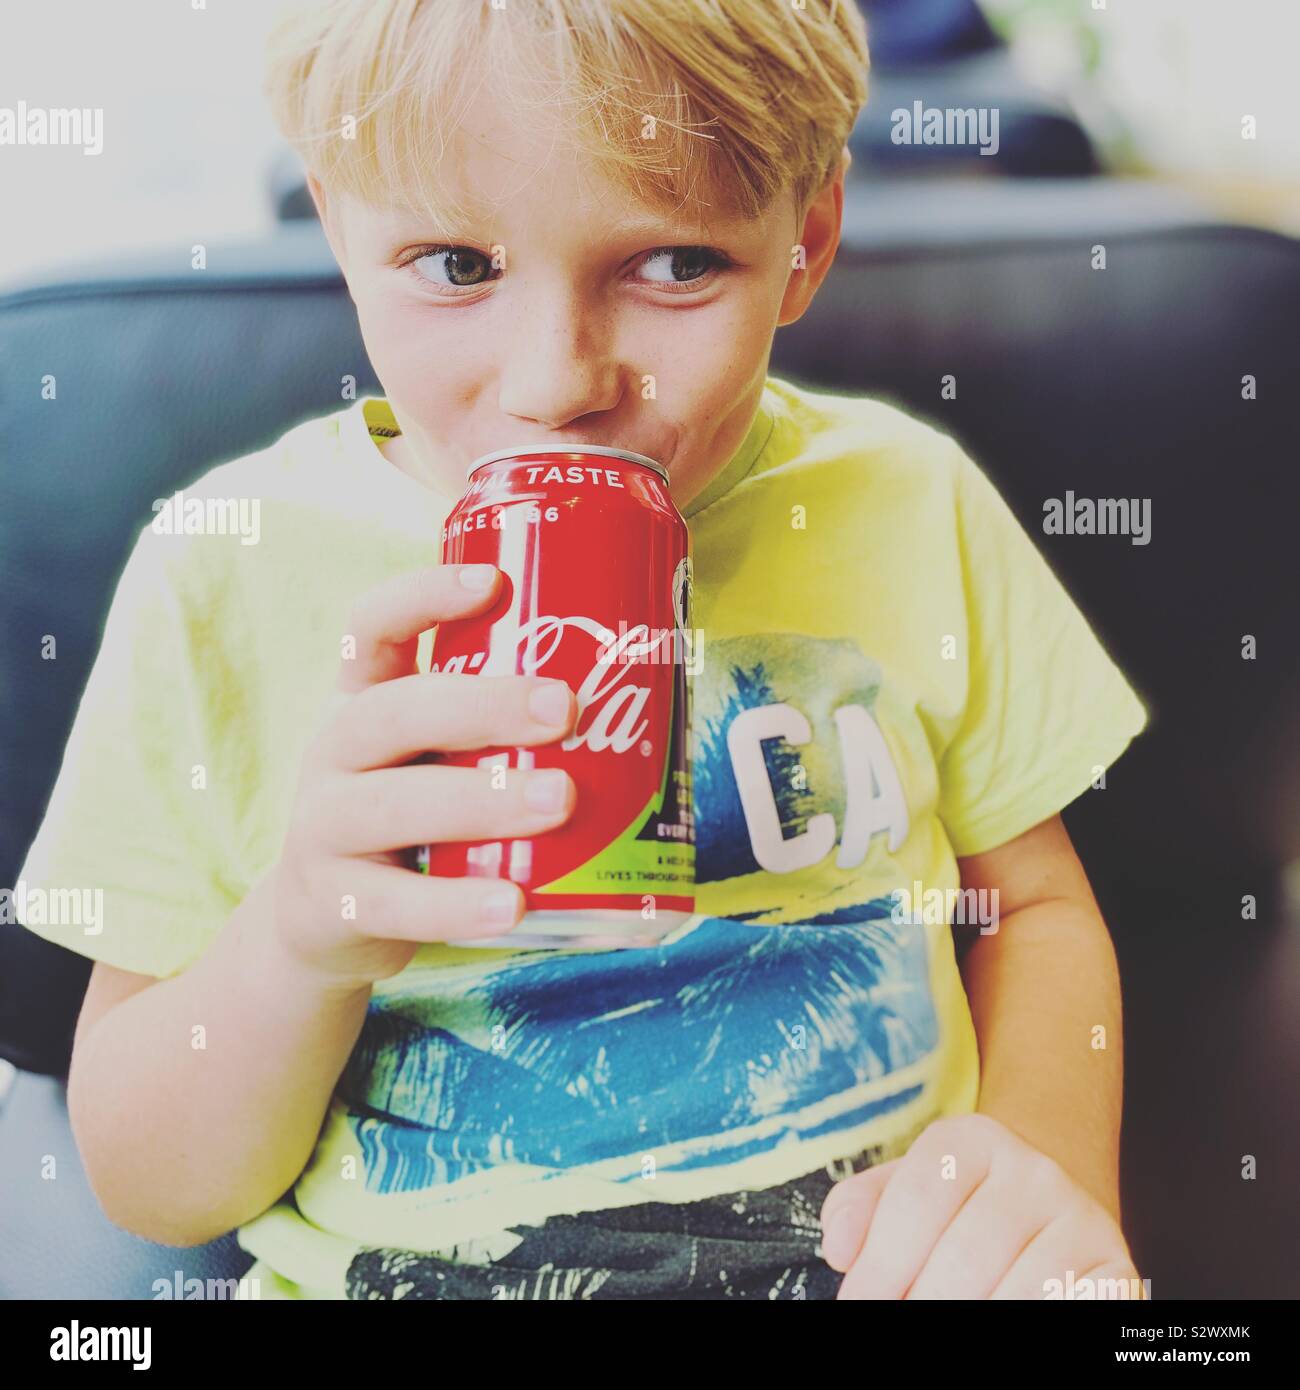 Boy enjoying a naughty can of coke. Stock Photo